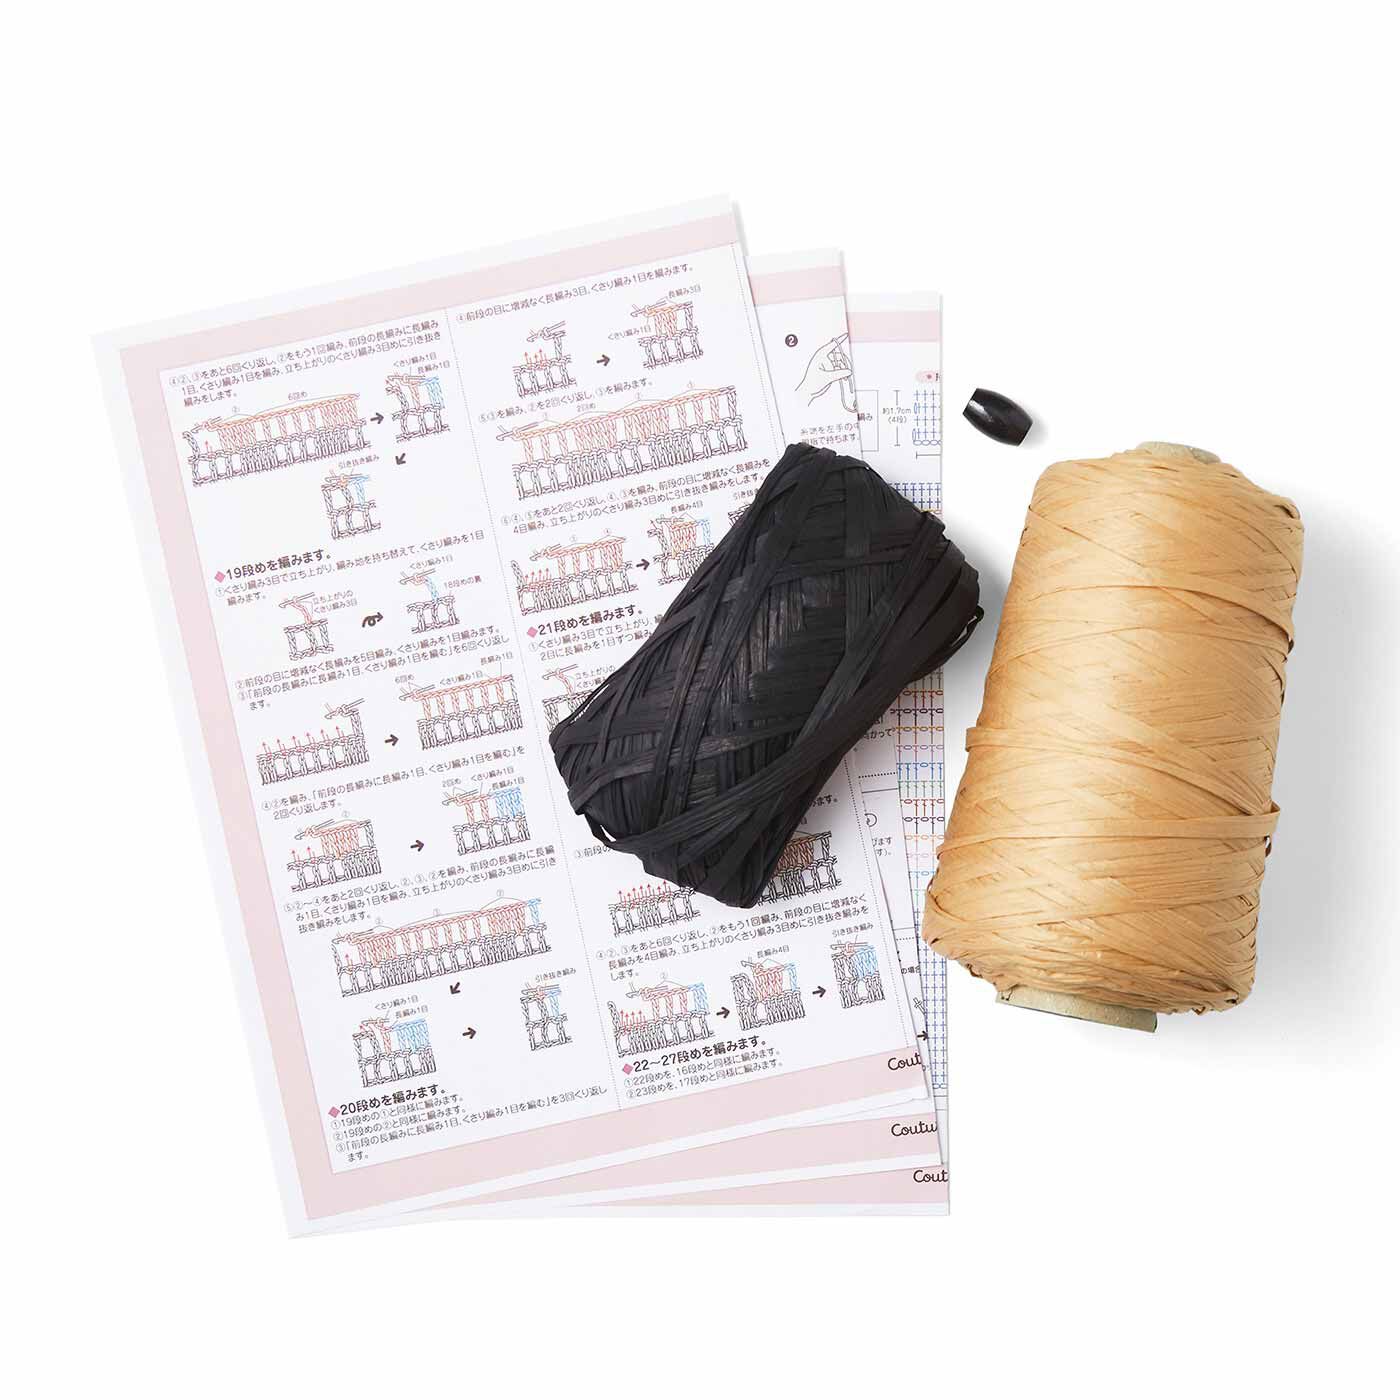 クチュリエ|軽くて丈夫なマニラヘンプヤーンで編む かぎ針編みバッグの会|●1回分のお届けキット例です。